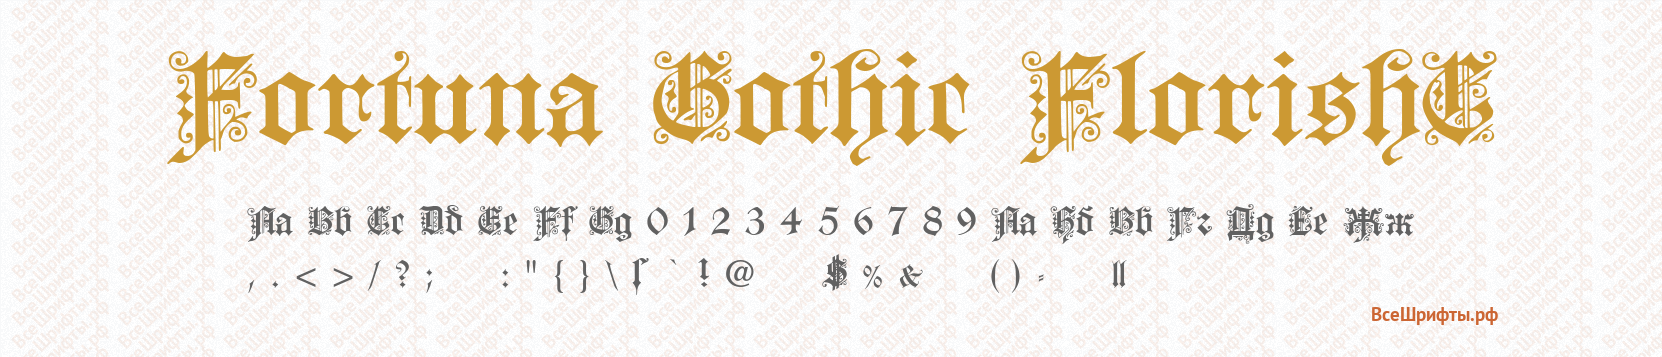 Шрифт Fortuna Gothic FlorishC